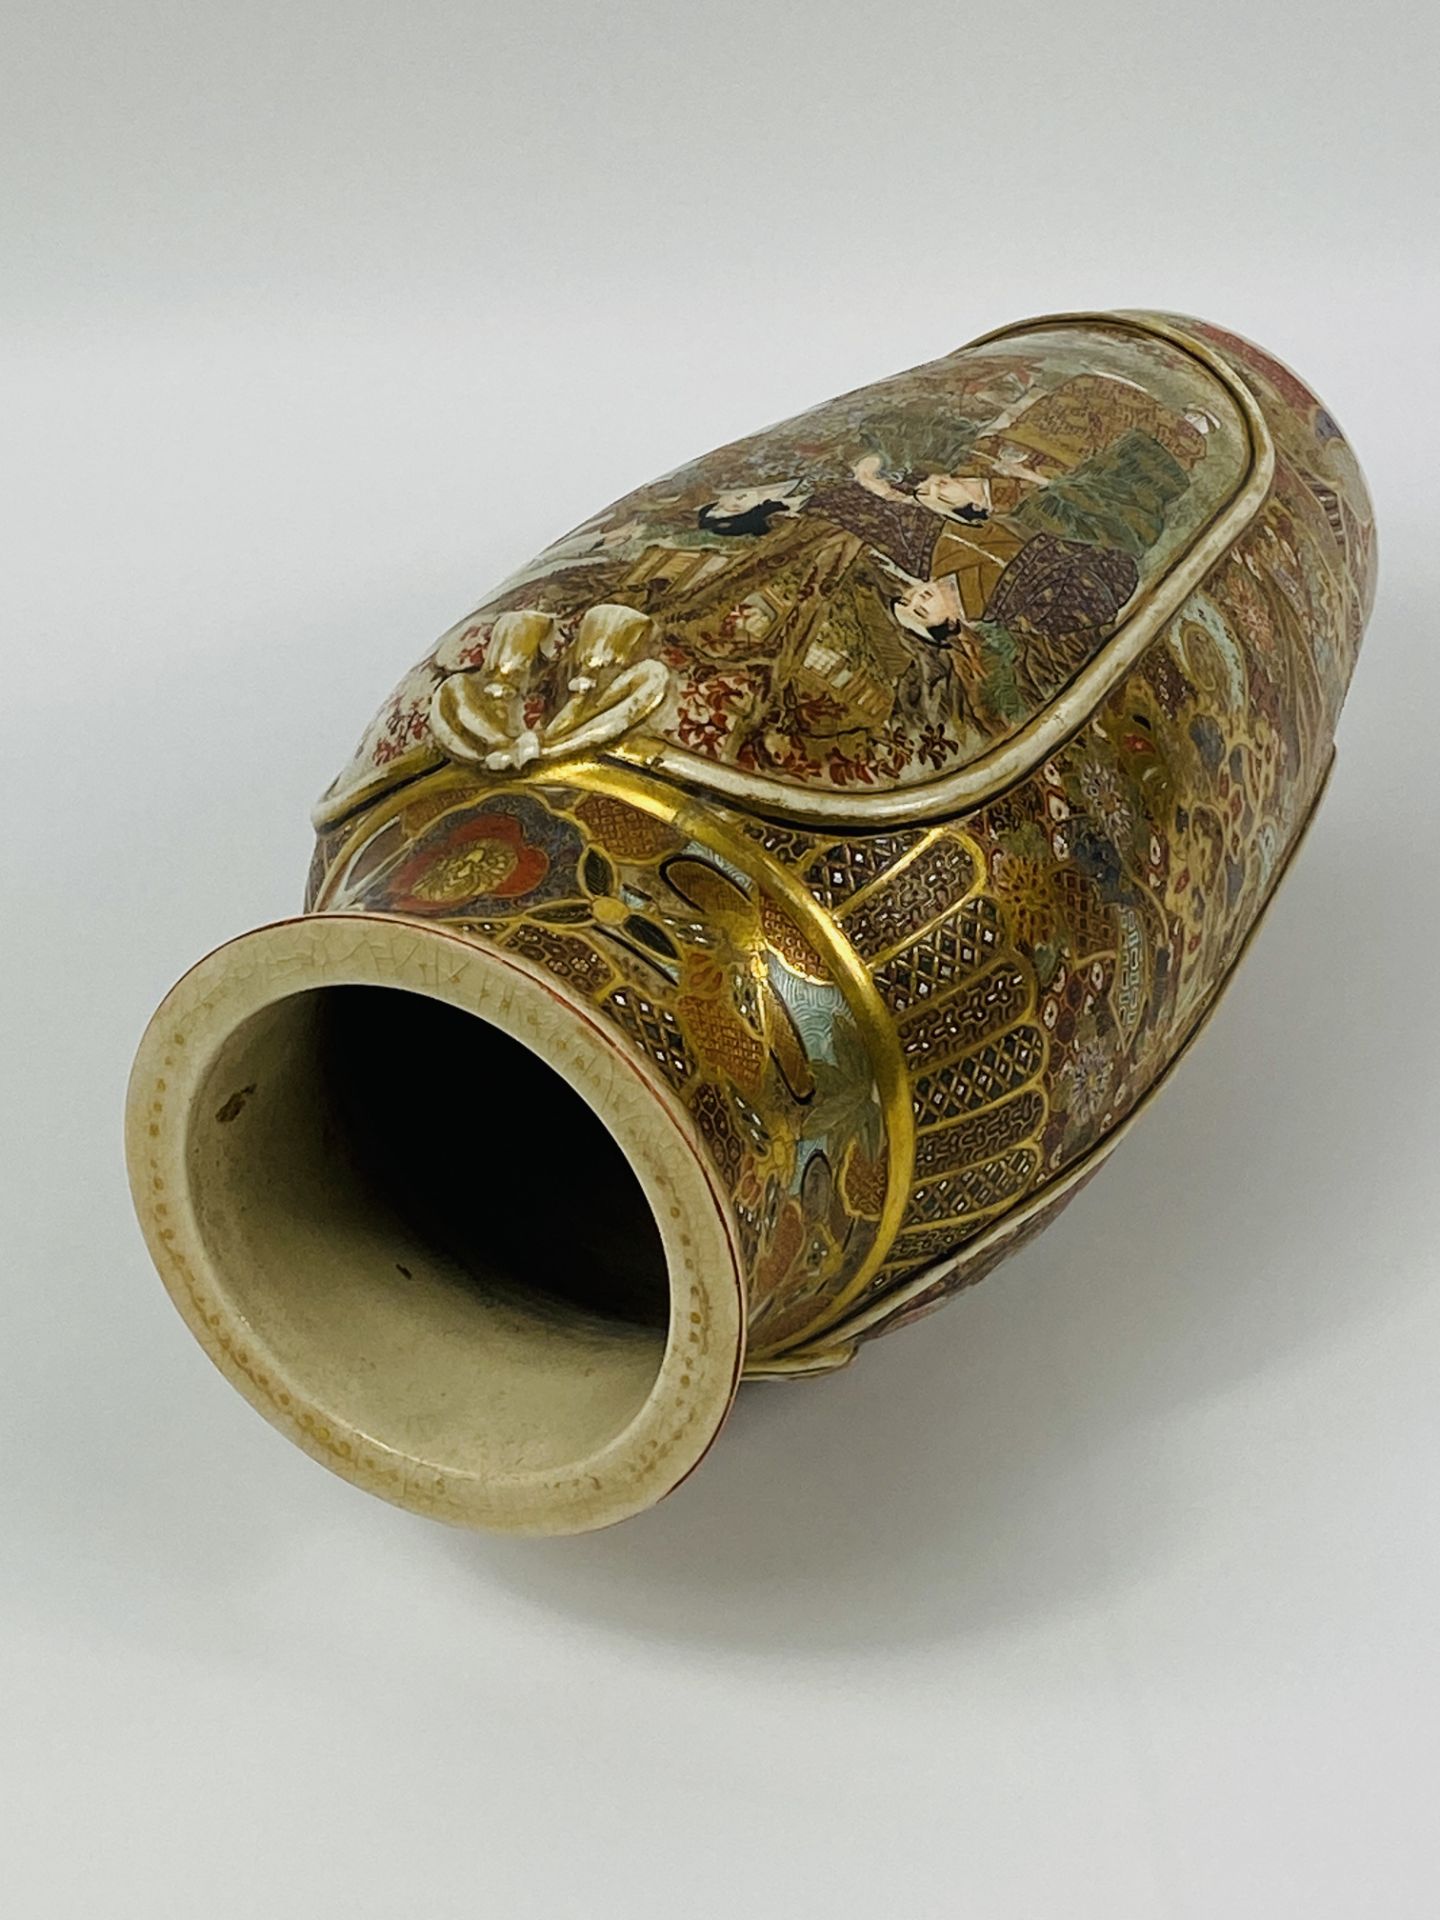 Early 20th century Satsuma vase - Image 4 of 4